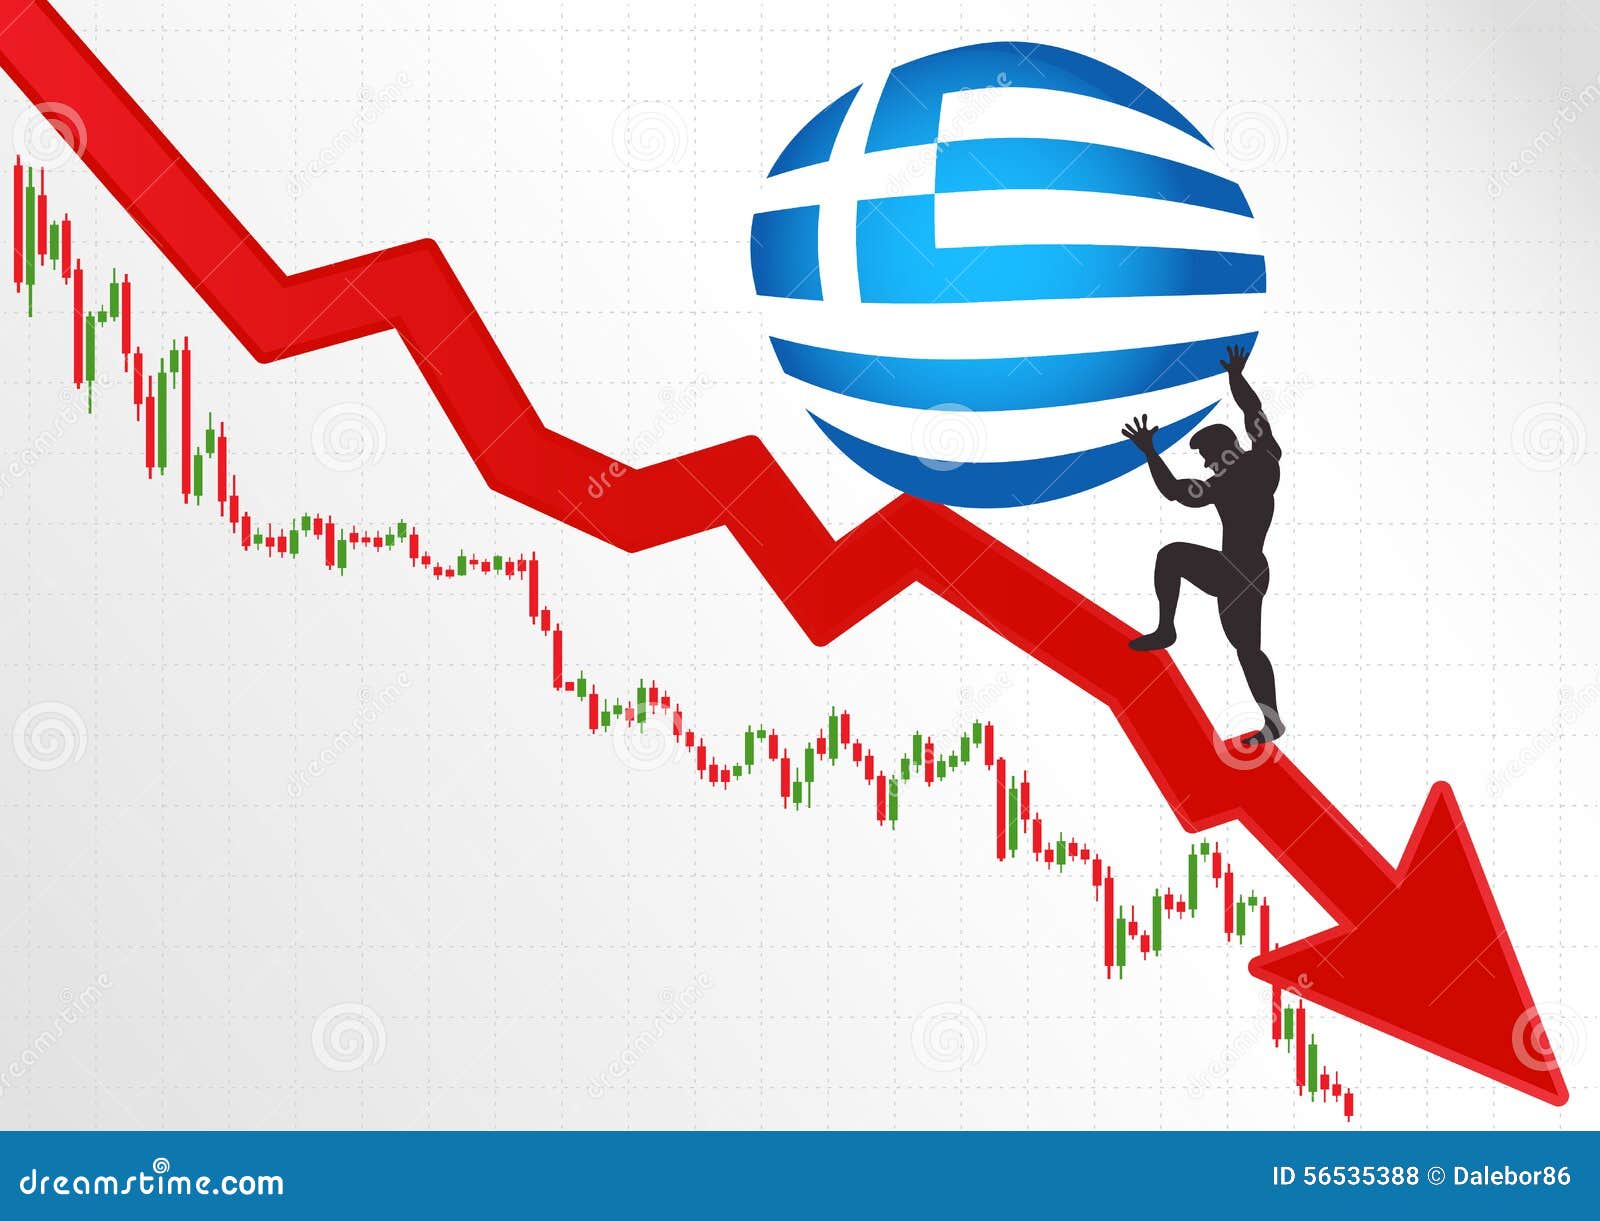 Греческий кризис. Кризис в Греции. Долговой кризис в Греции. Дефолт в Греции 2015. Кризис в Греции 2008.